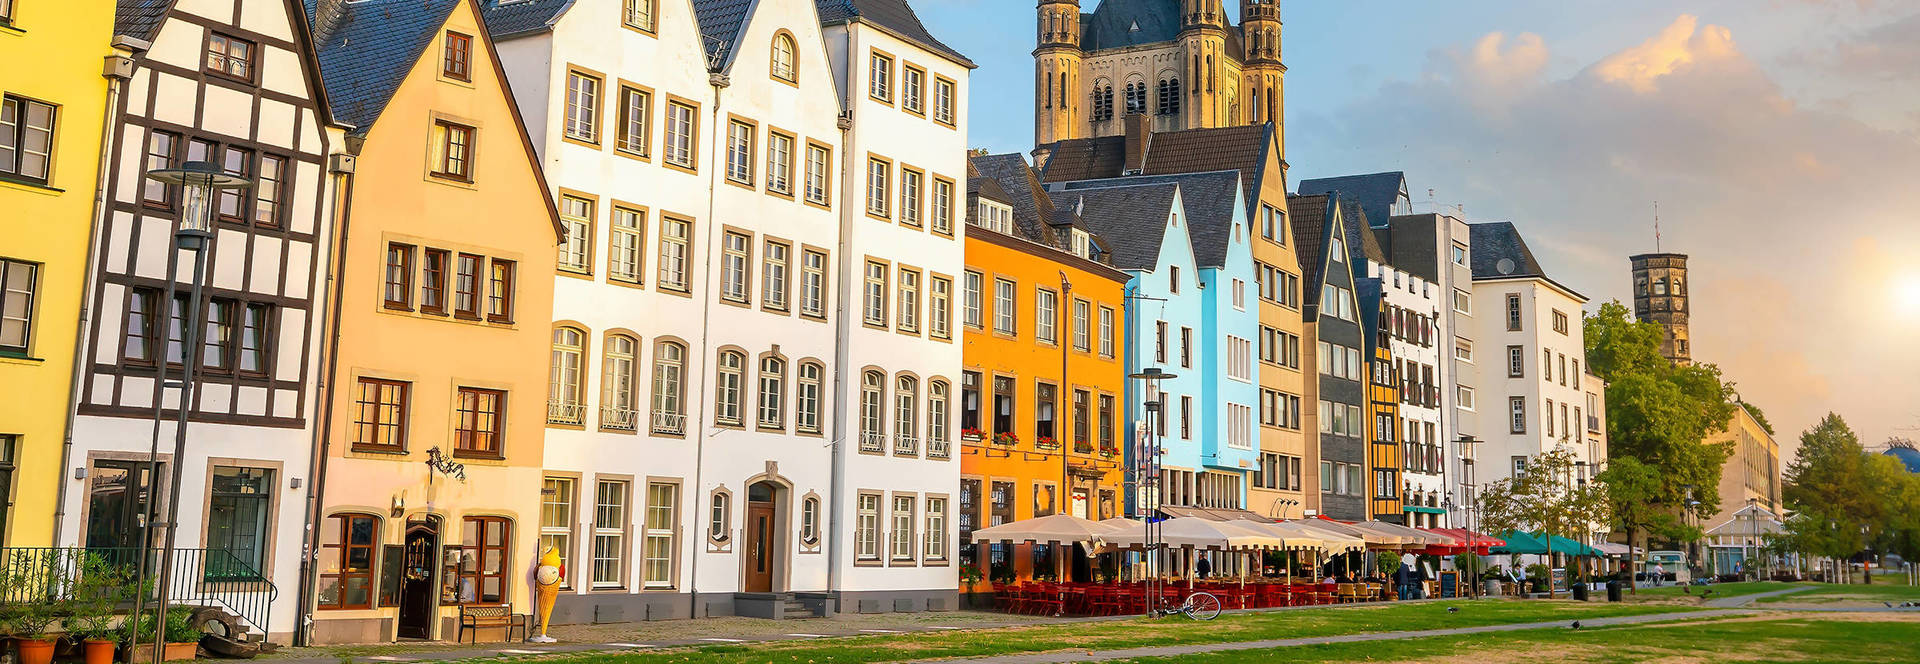 Sehenswürdigkeiten in Köln - H-Hotels - Offizielle Webseite